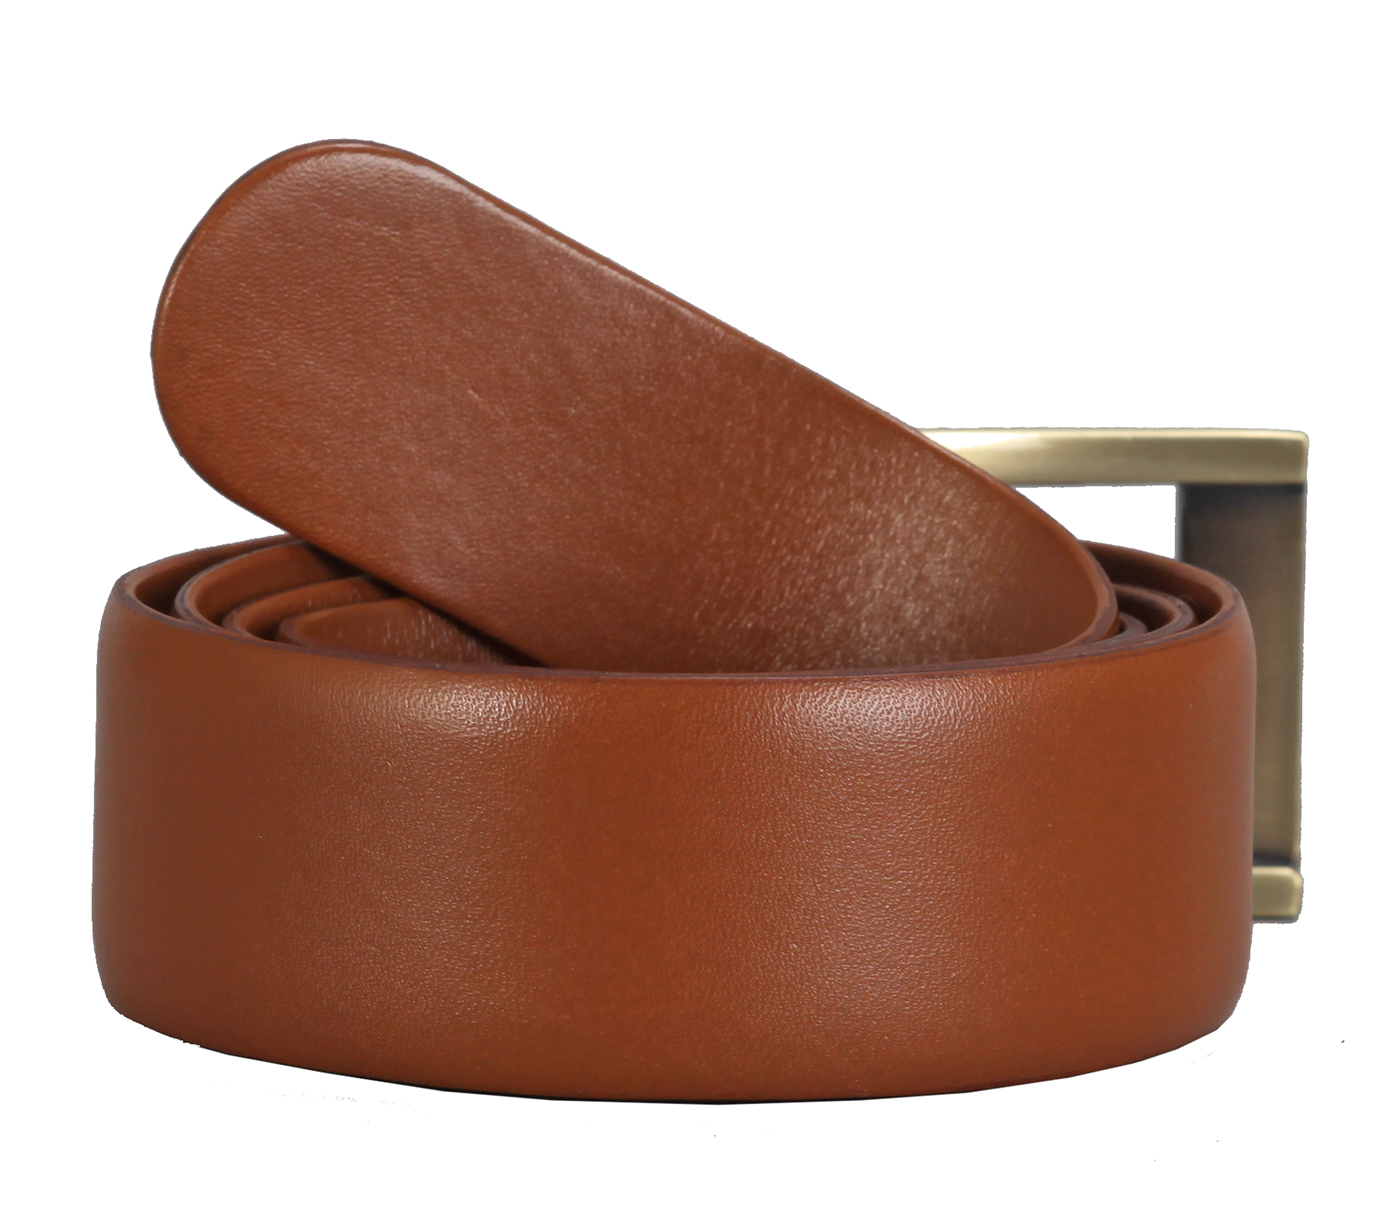 BL142--Men's Formal wear belt in Genuine Leather - Tan